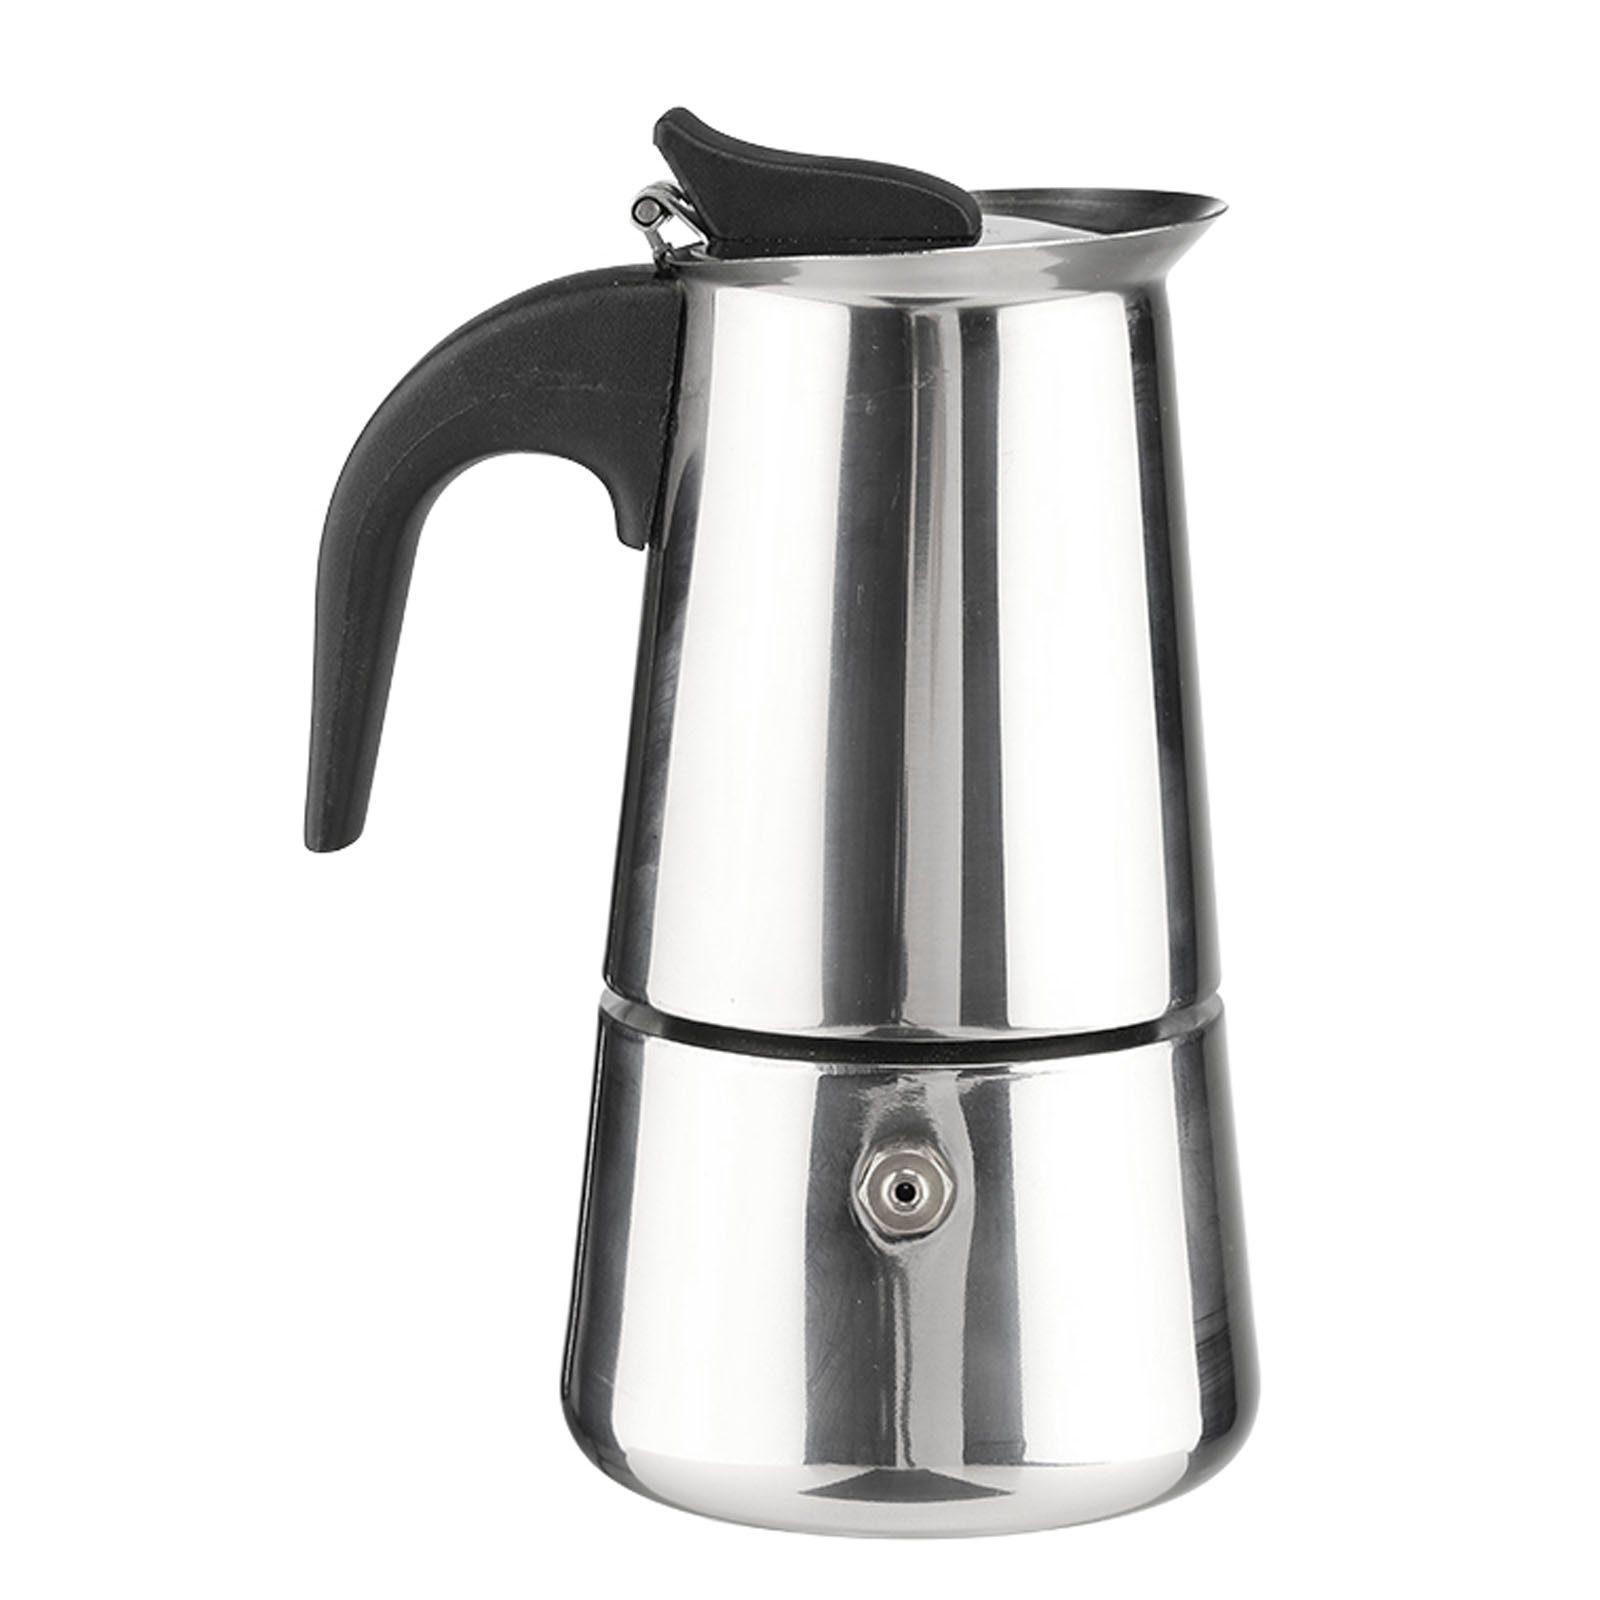 Edelstahl für 2 Kaffeekanne, Kaffeekocher, Espresso HAC24 0,1l Kanne Espressobereiter Tassen Espressokocher